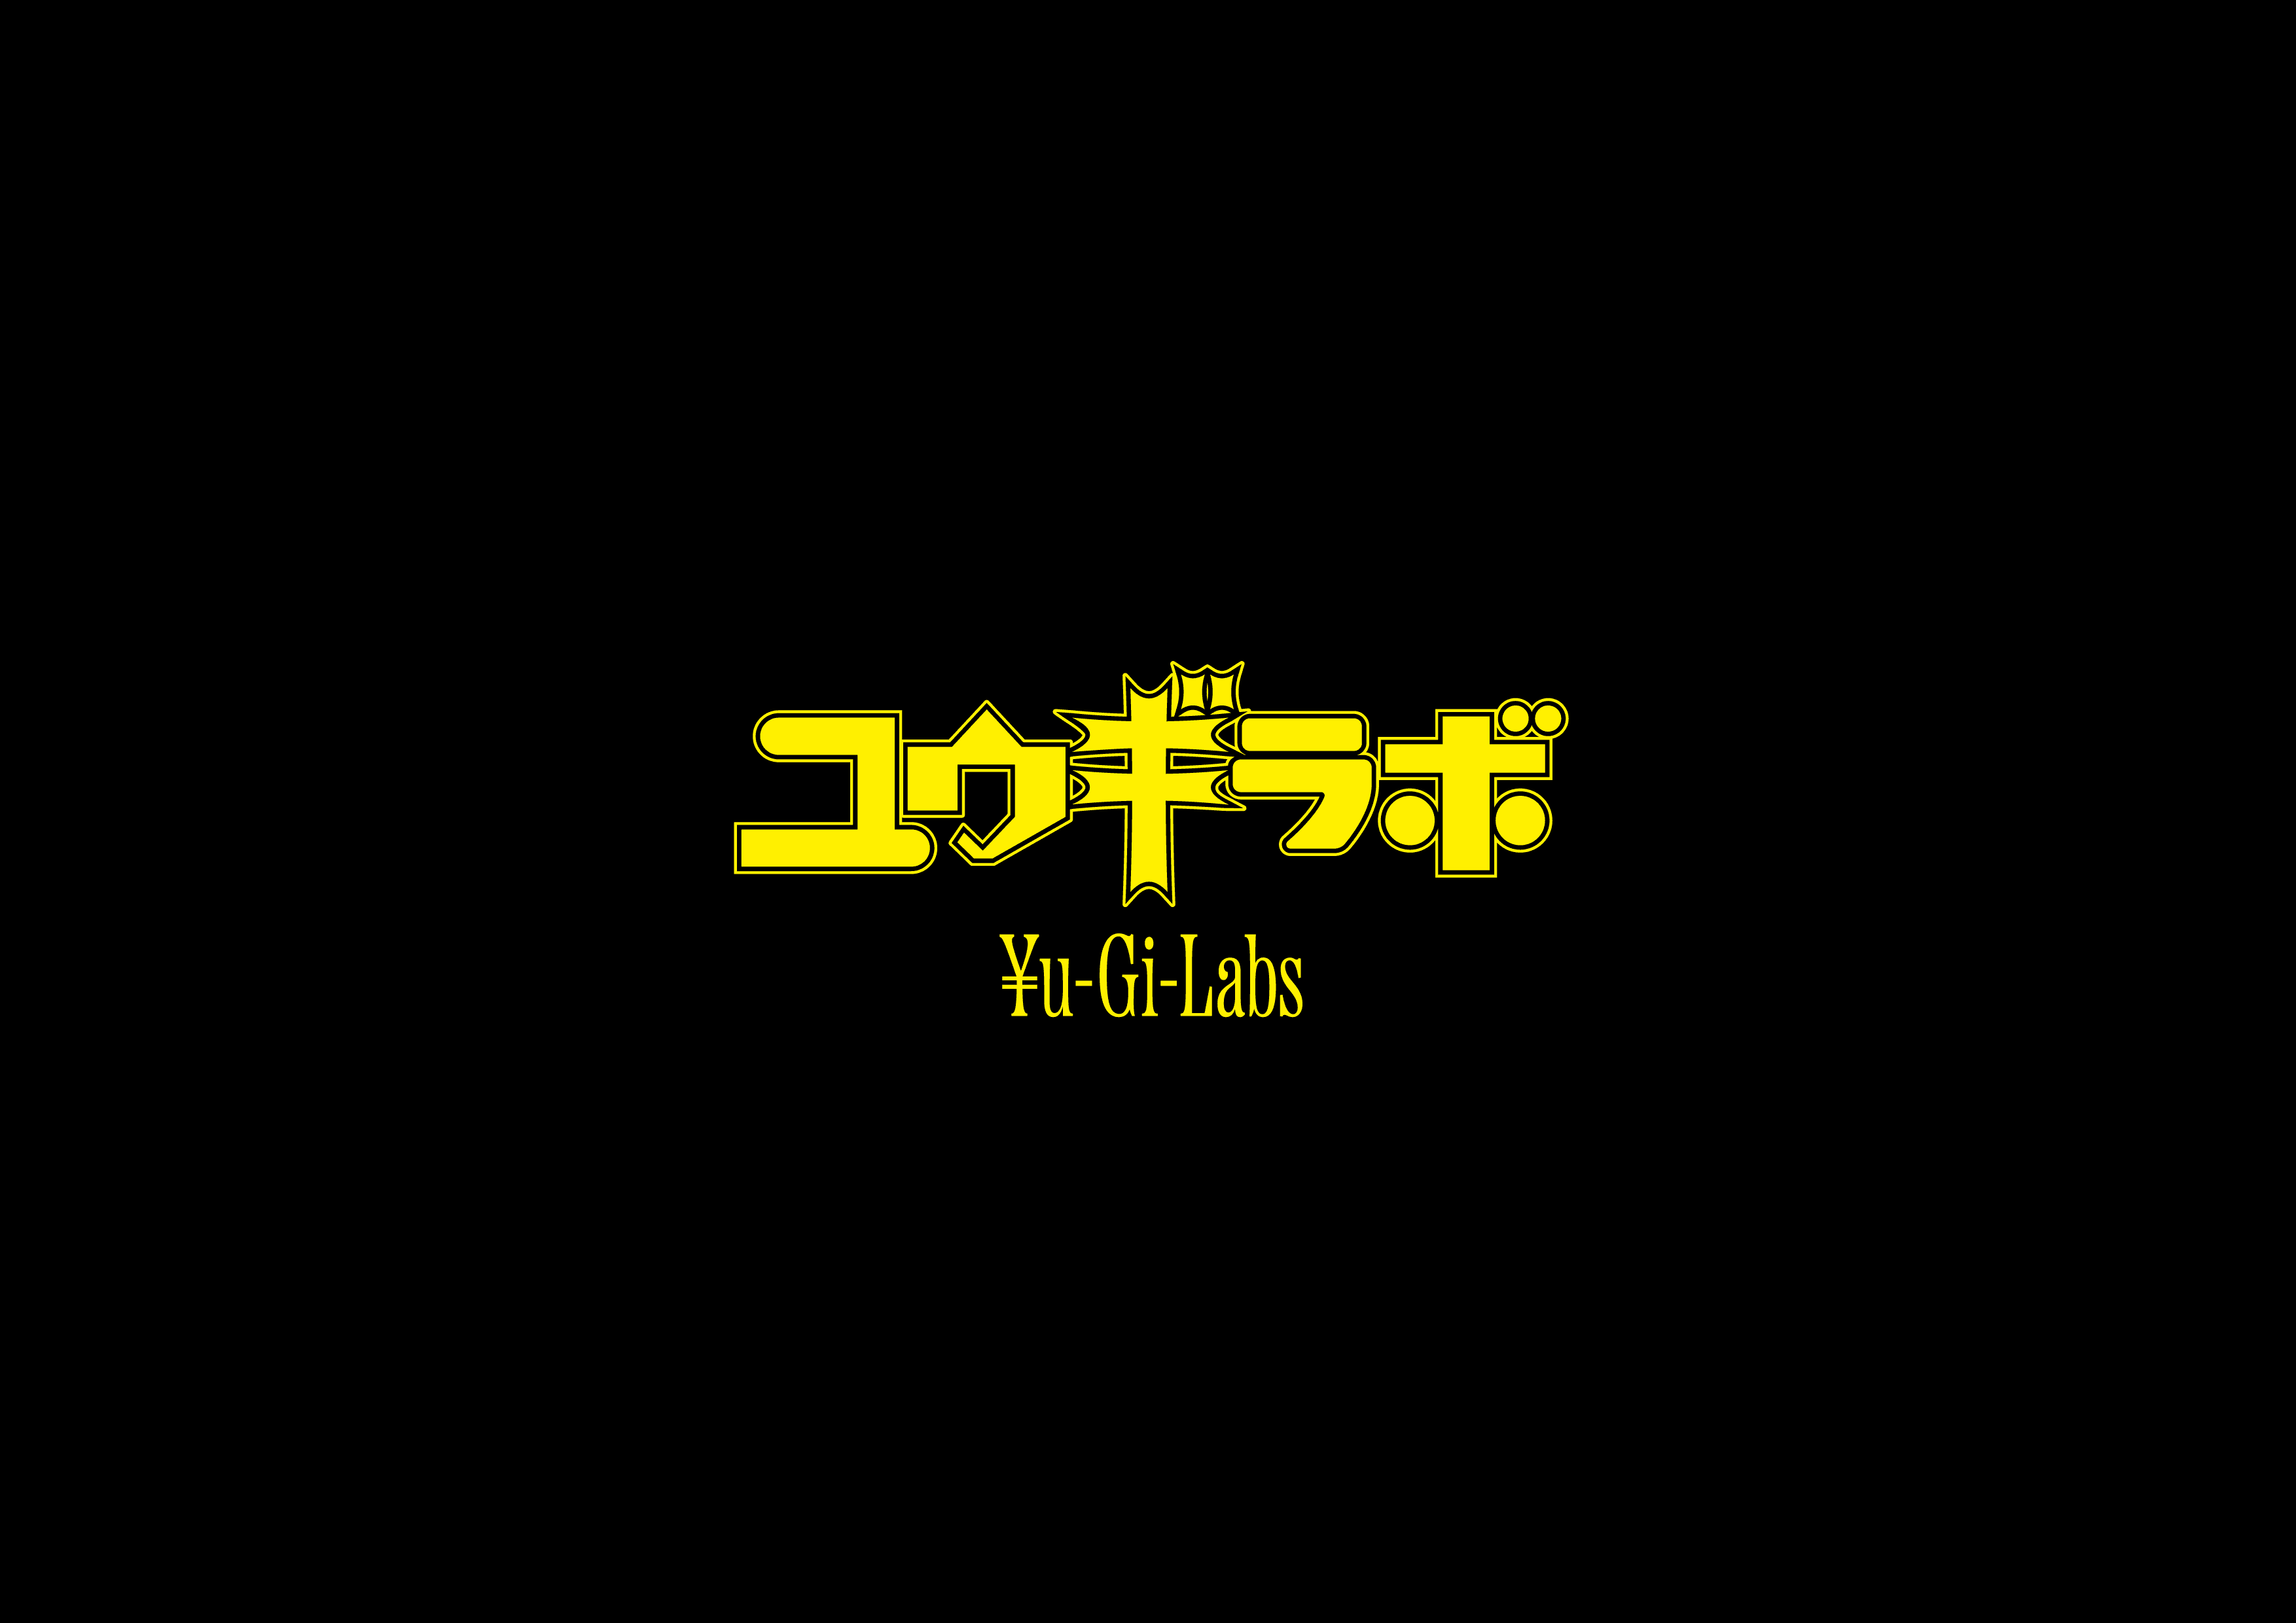 YuGi-Labs 橫幅